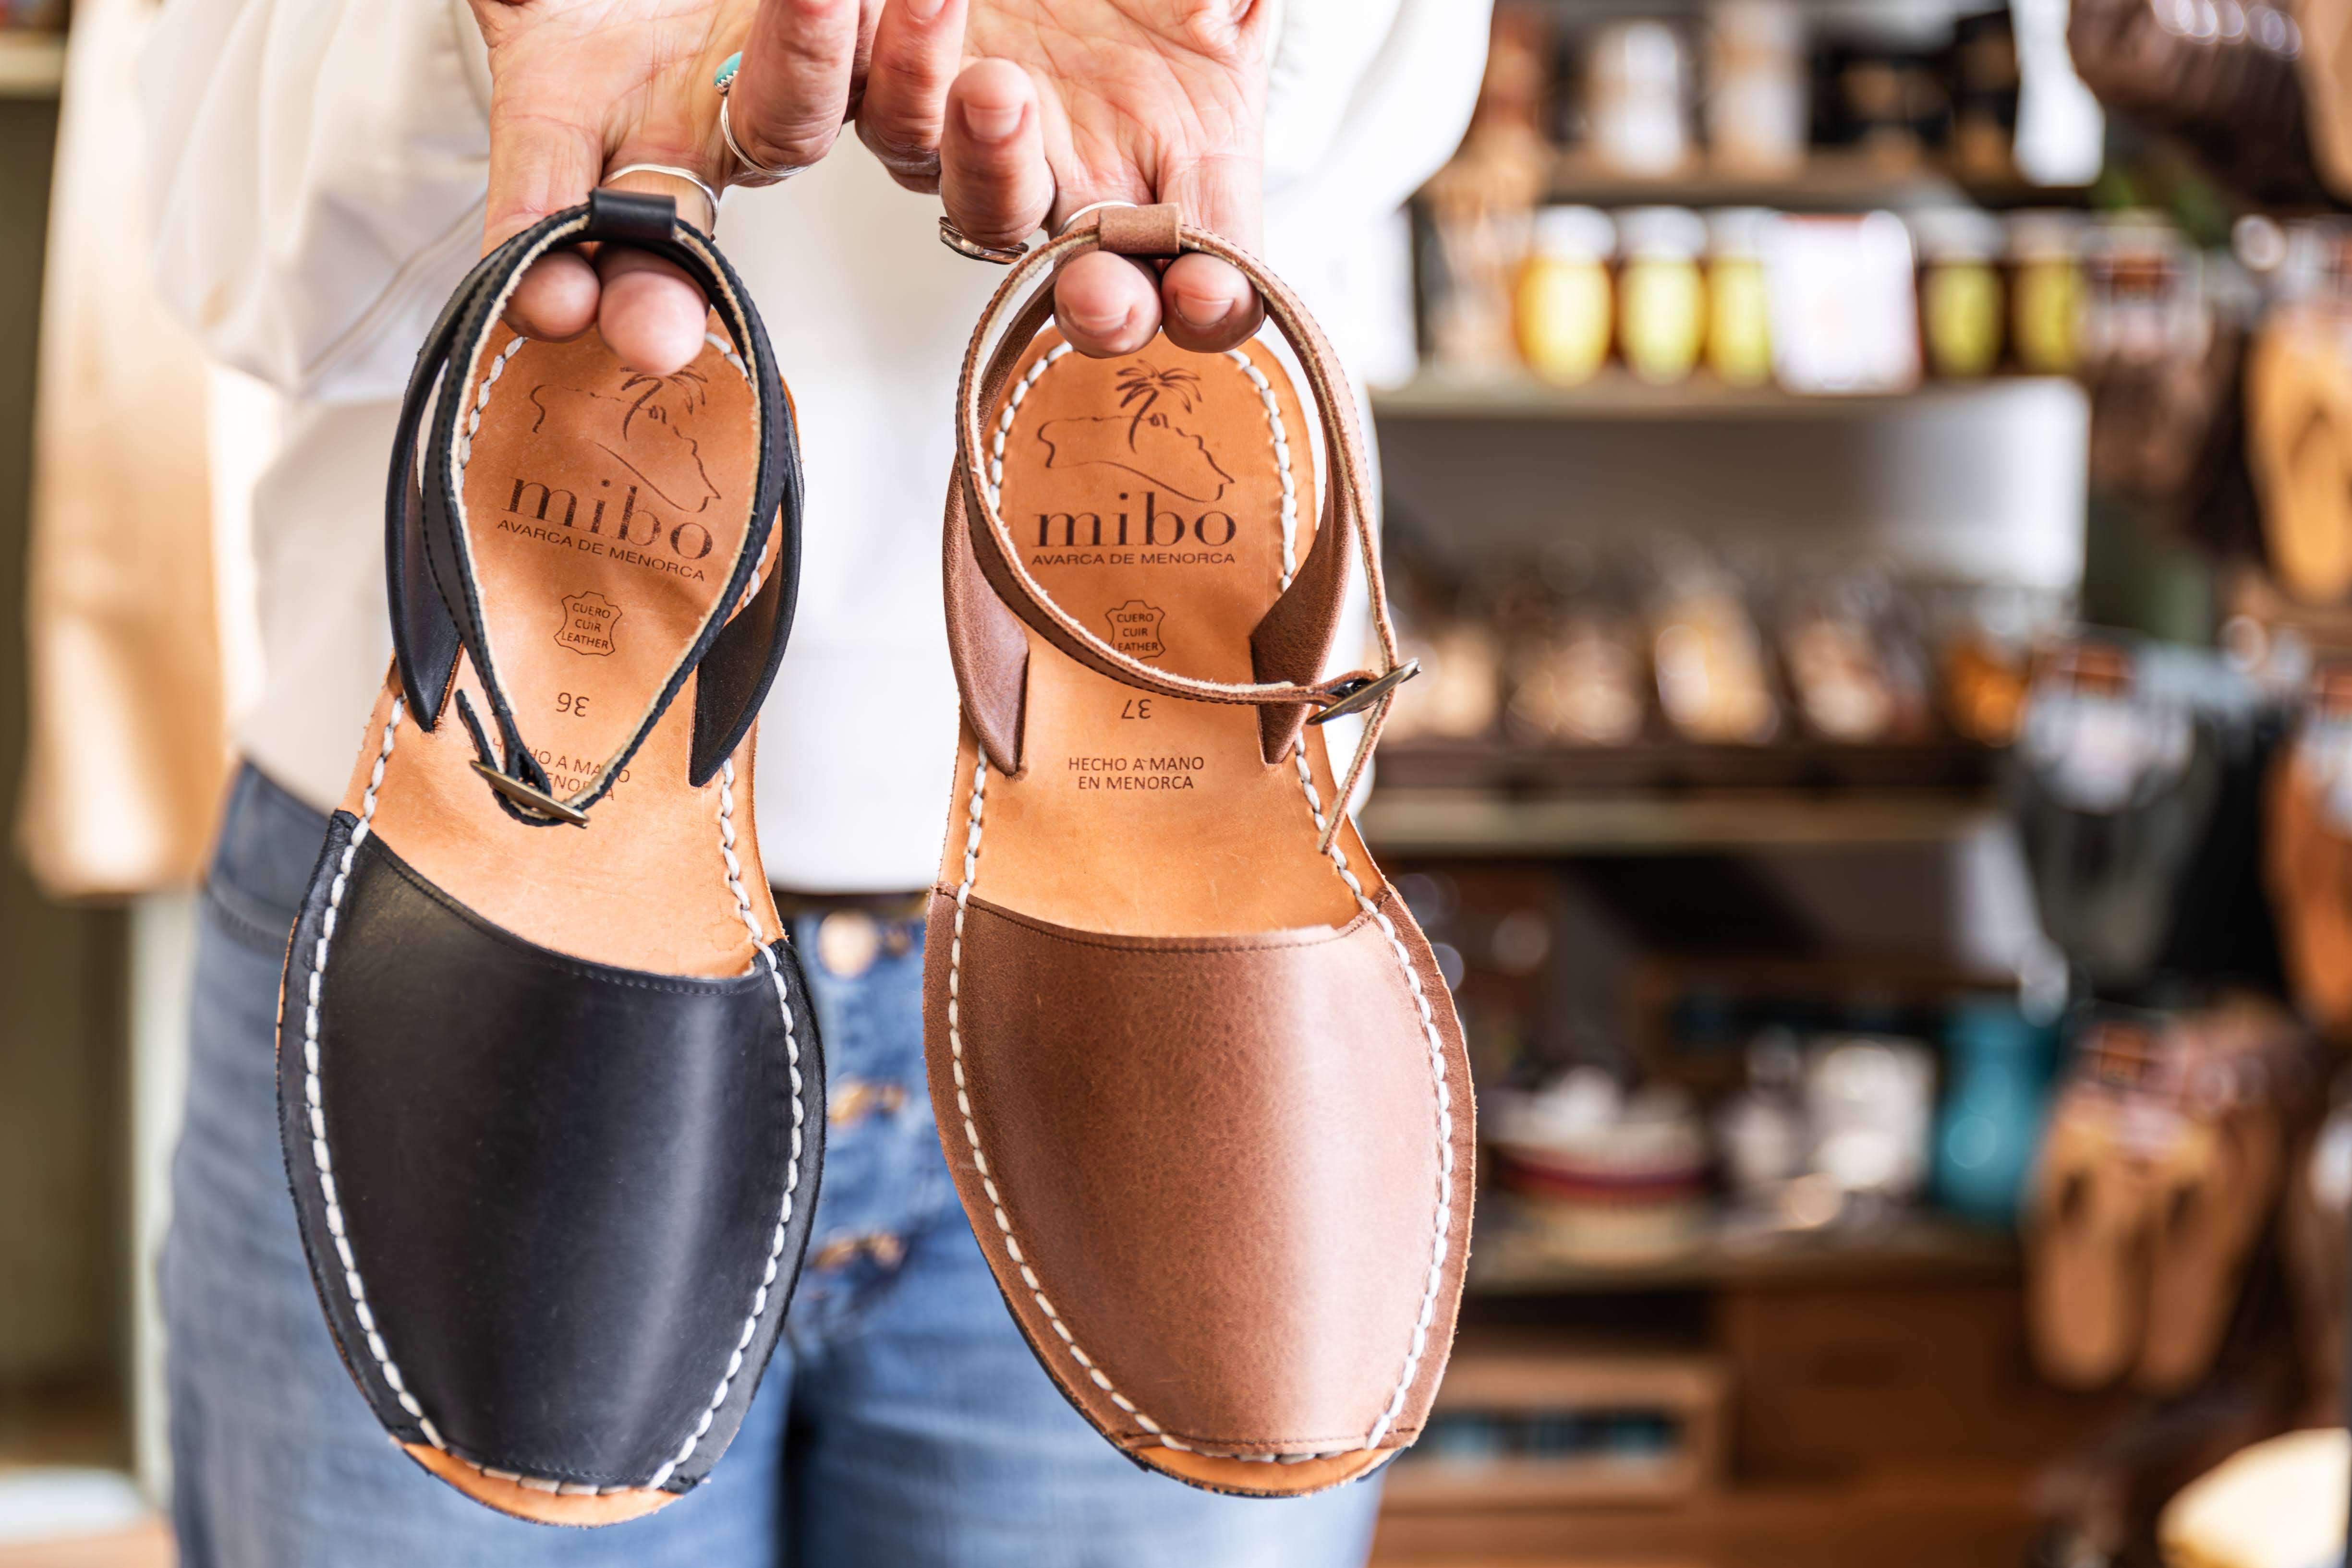 Les Doubles Sandales leather sandals